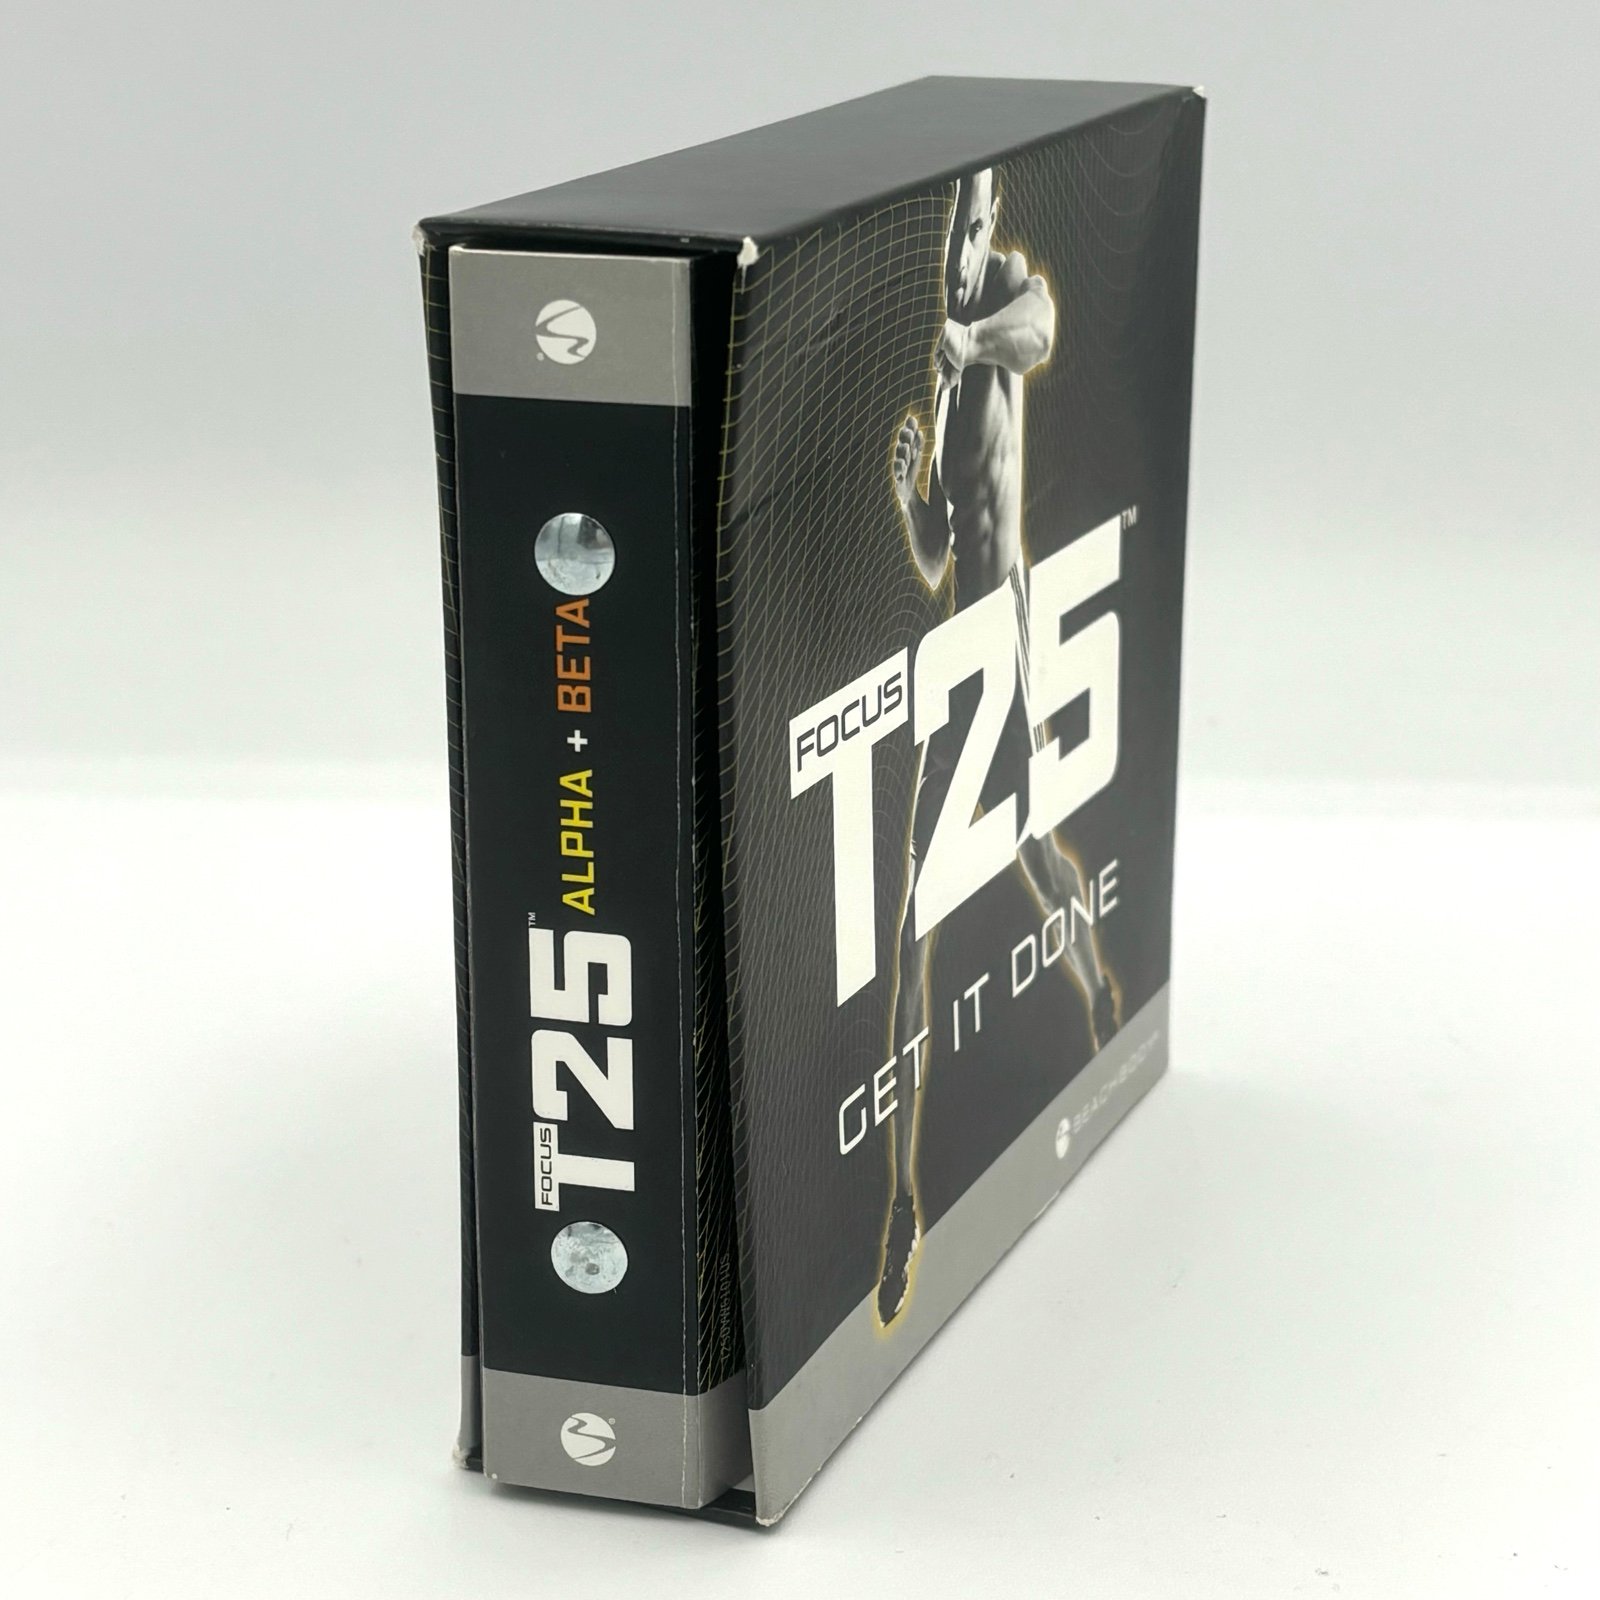 Focus T25 Get it Done Alpha, Beta 9 Disc DVD Set G7P0dEGmg